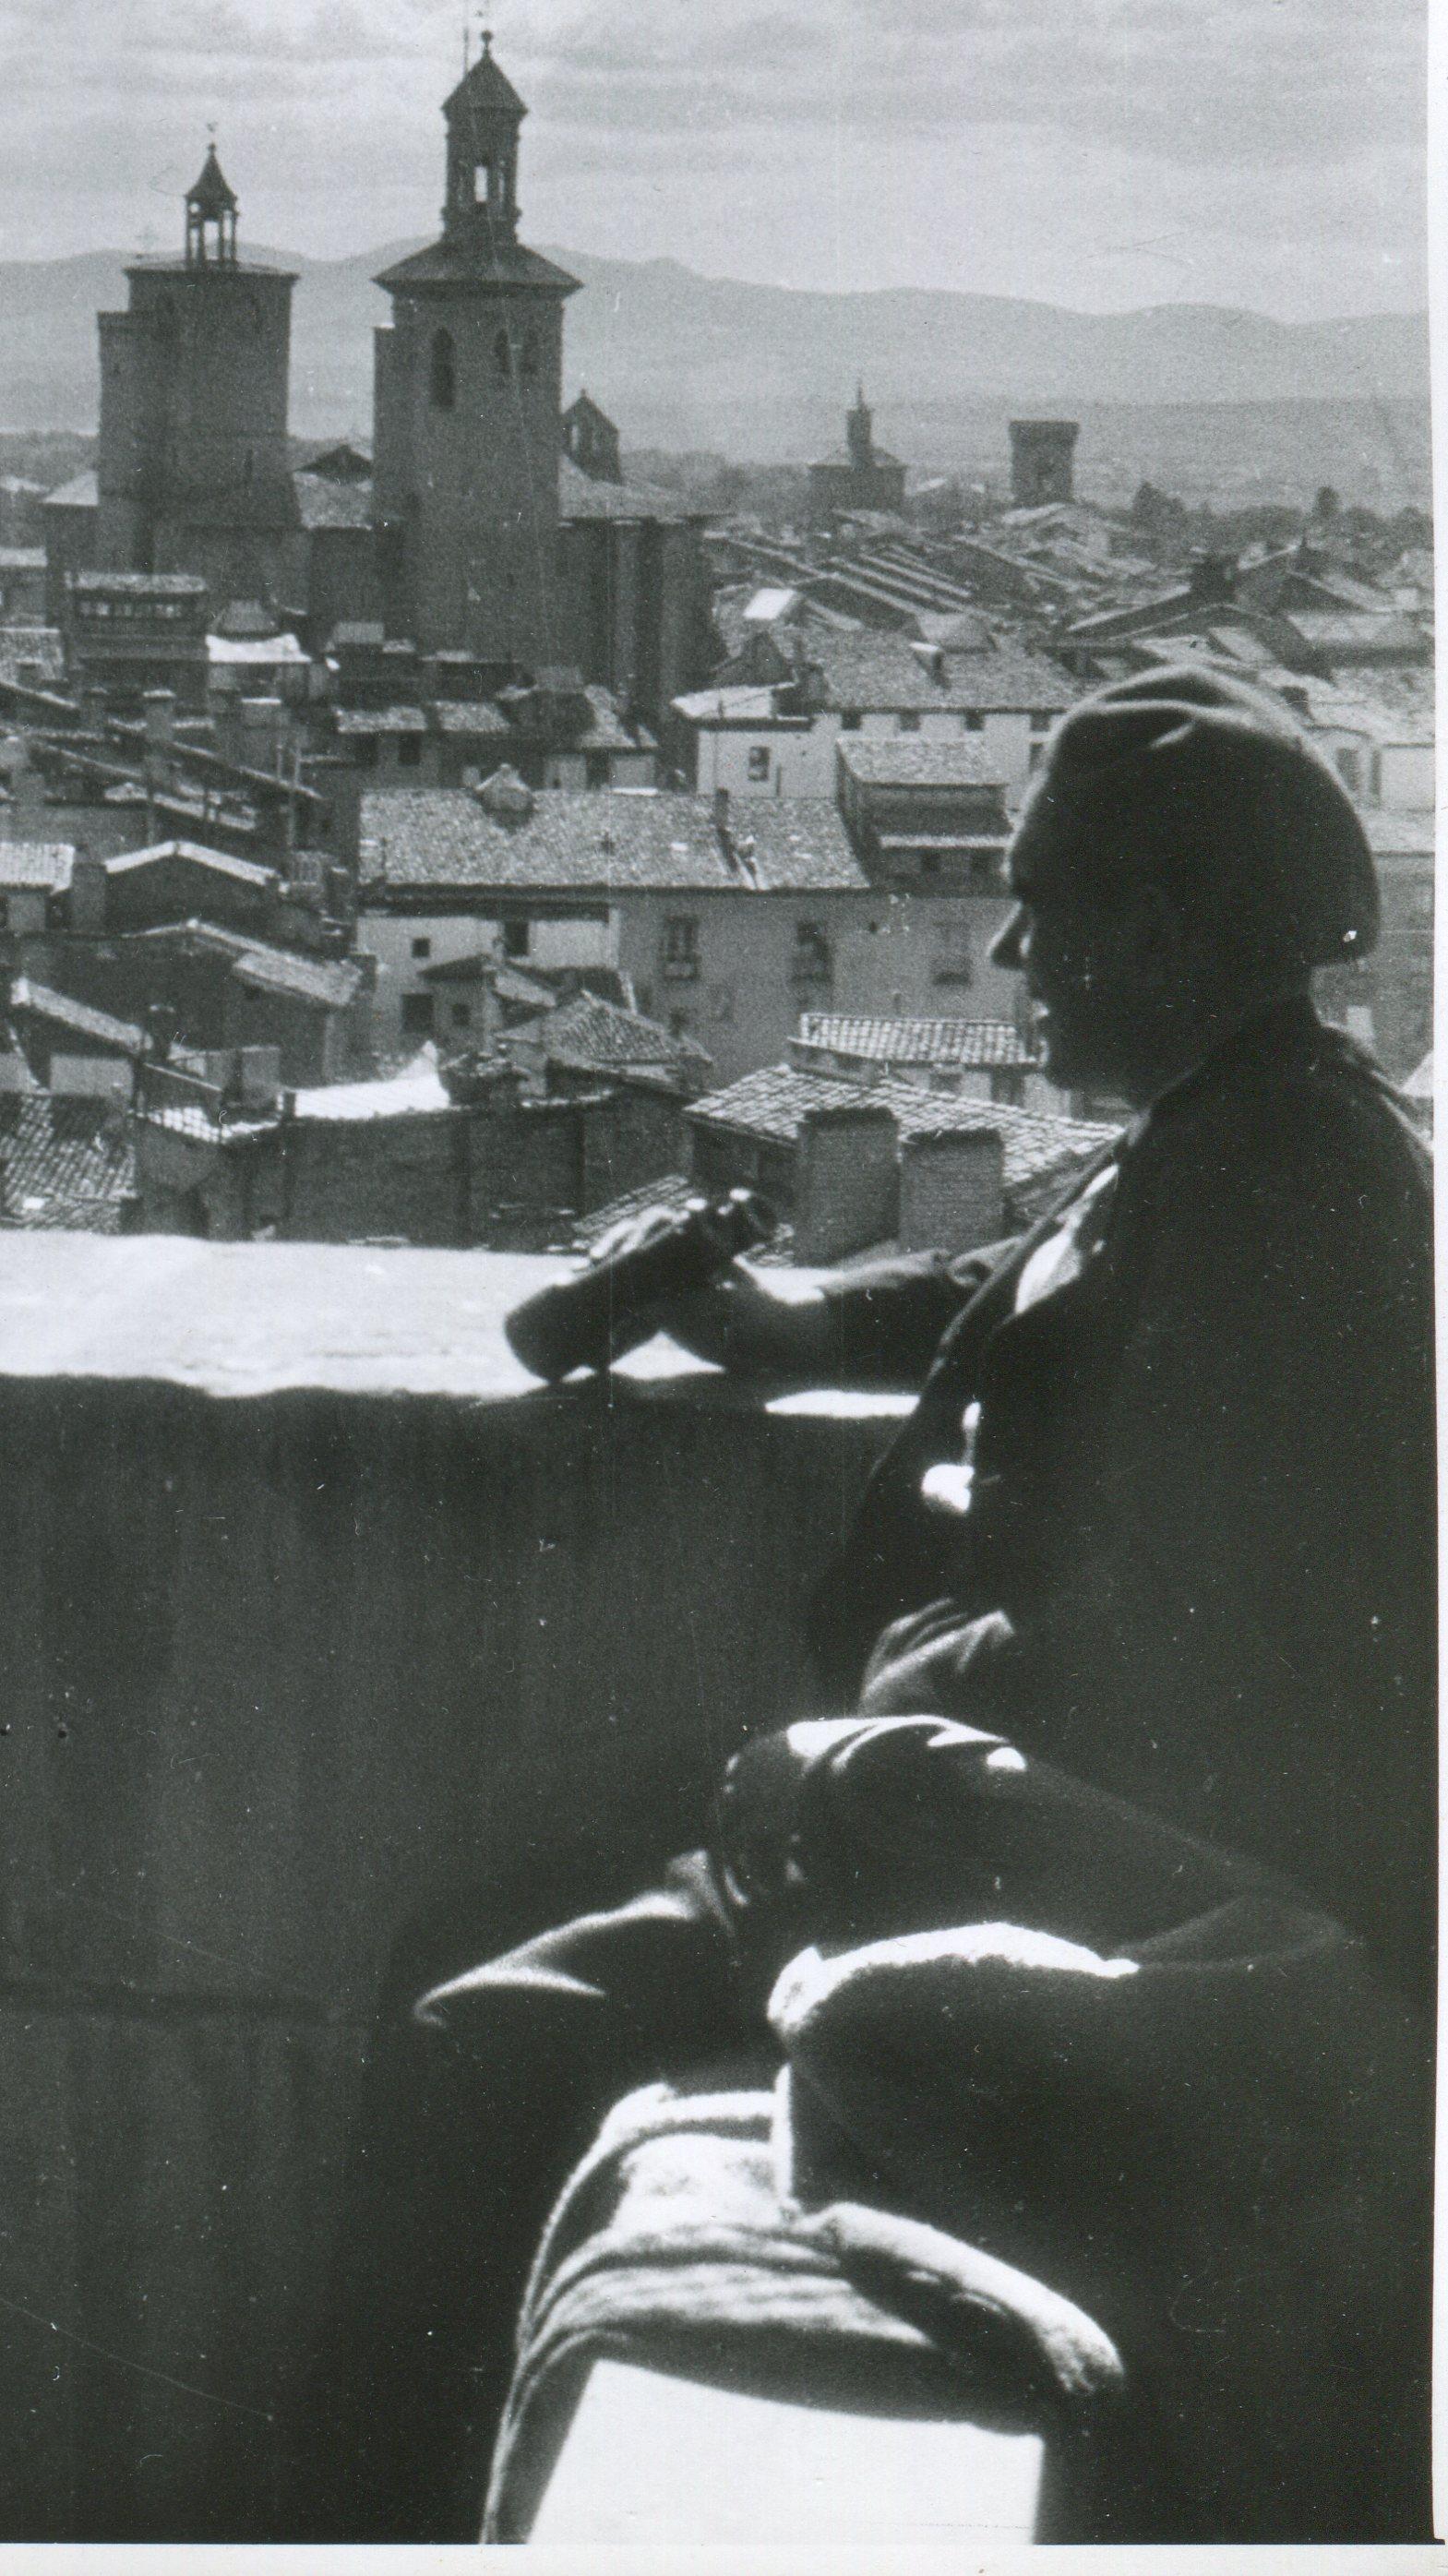 Pamplona, Espagne, 1936, Guerre de Sécession, Vue d'une tour - Photograph de Erich Andres